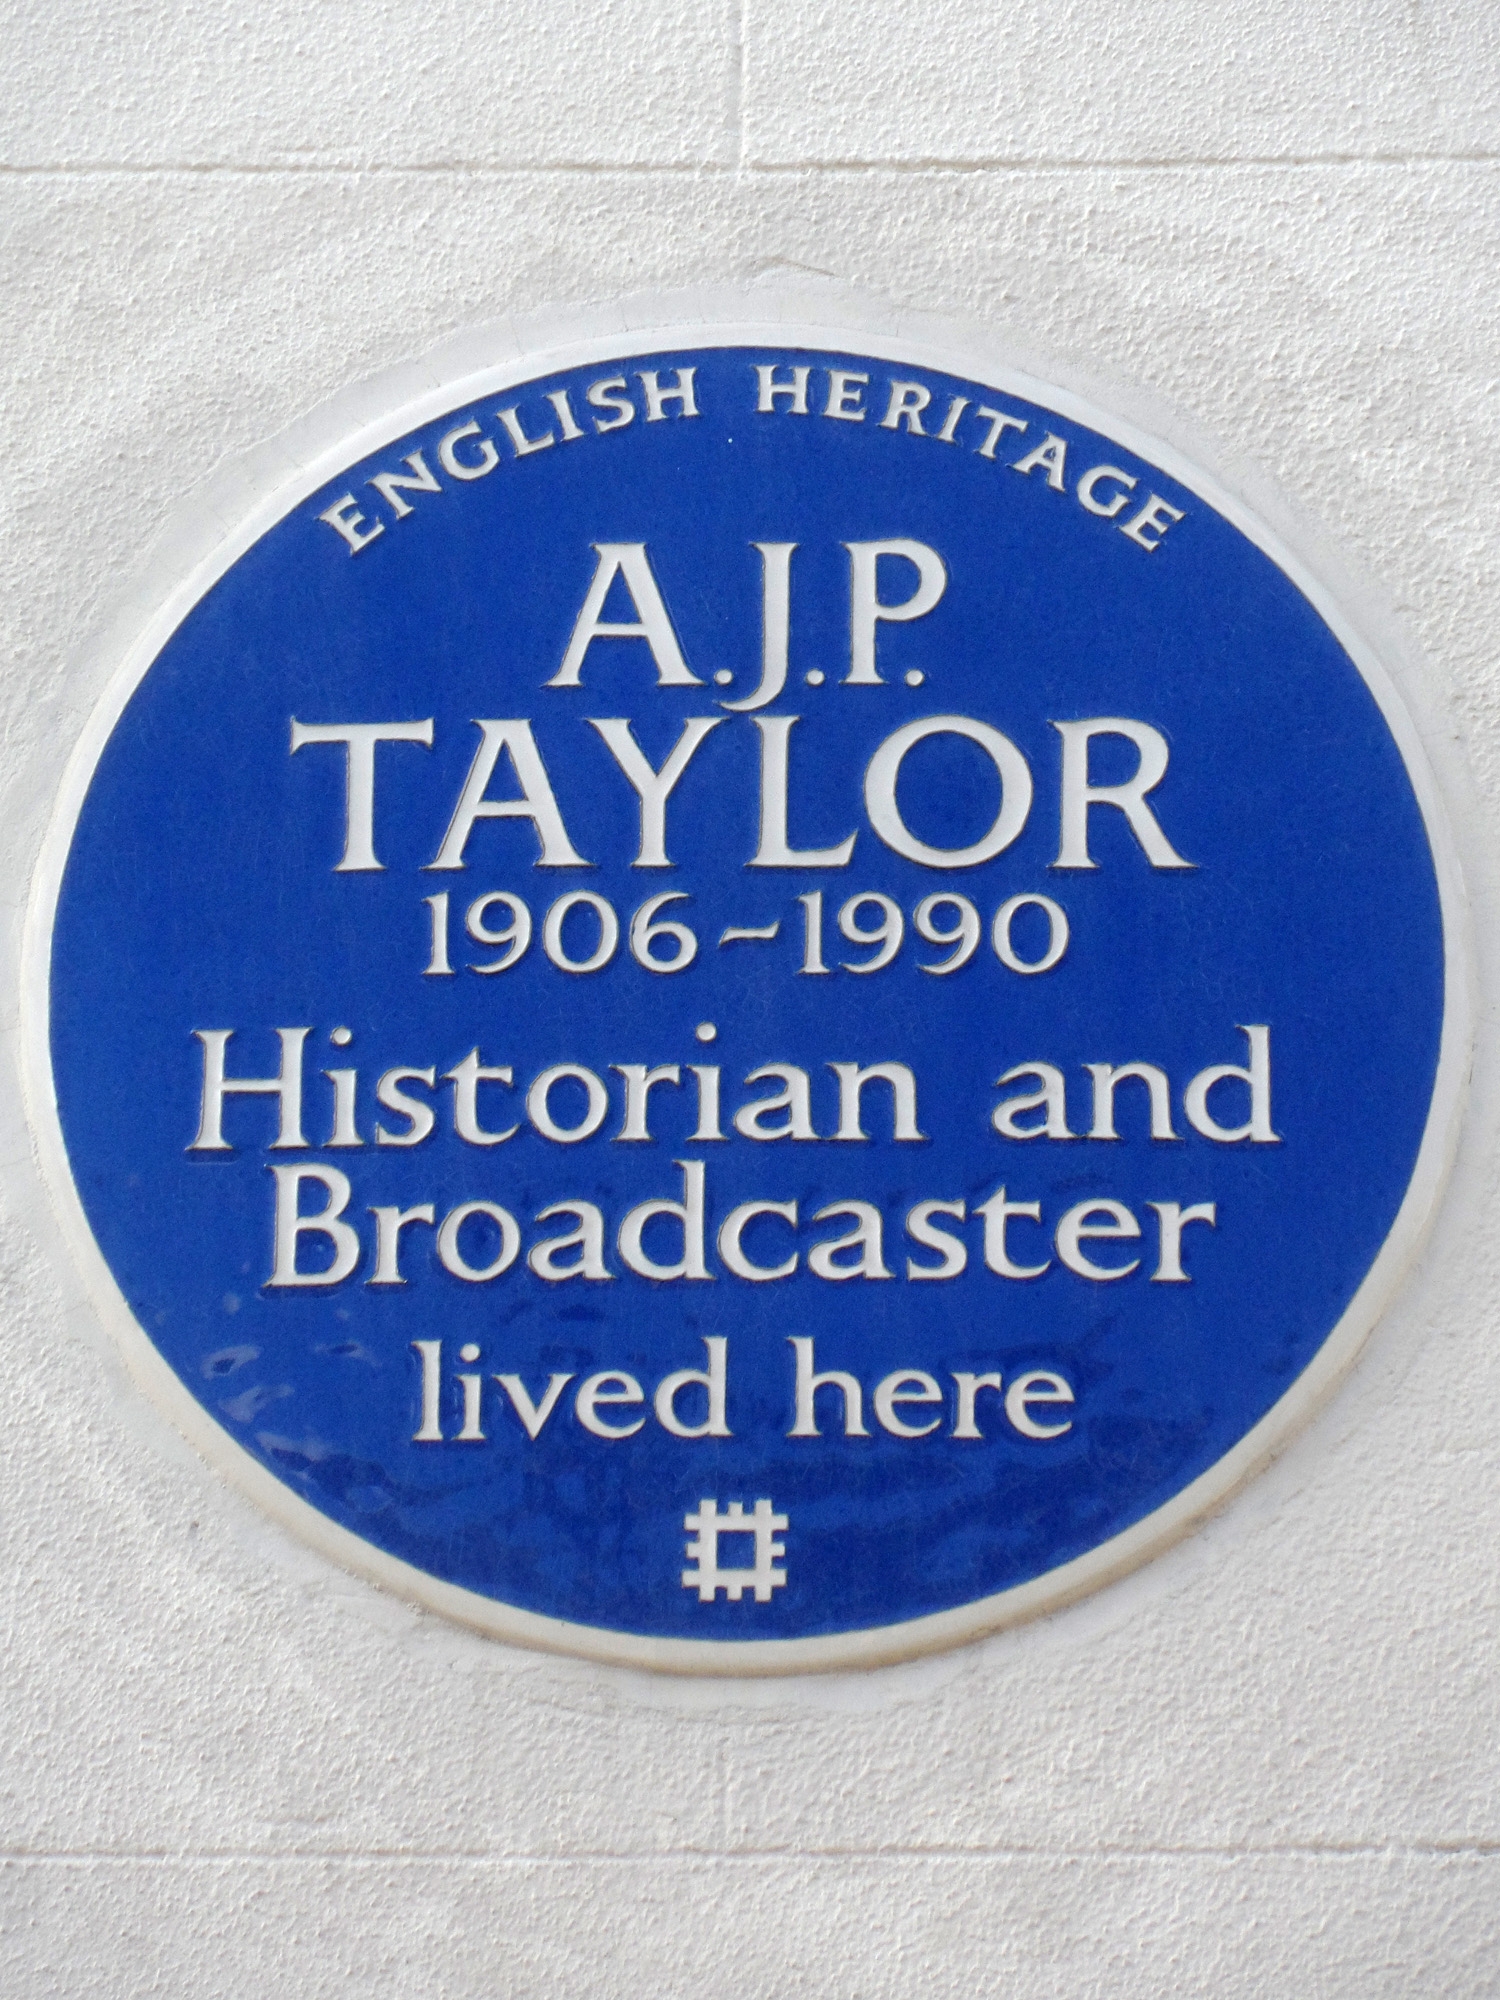 auteur A. J. P. Taylor de la citation Quand j'écris, je n'ai pas de loyauté sauf à la vérité historique telle que je la vois et ne me soucie pas des réalisations et des erreurs britanniques que tout autre.